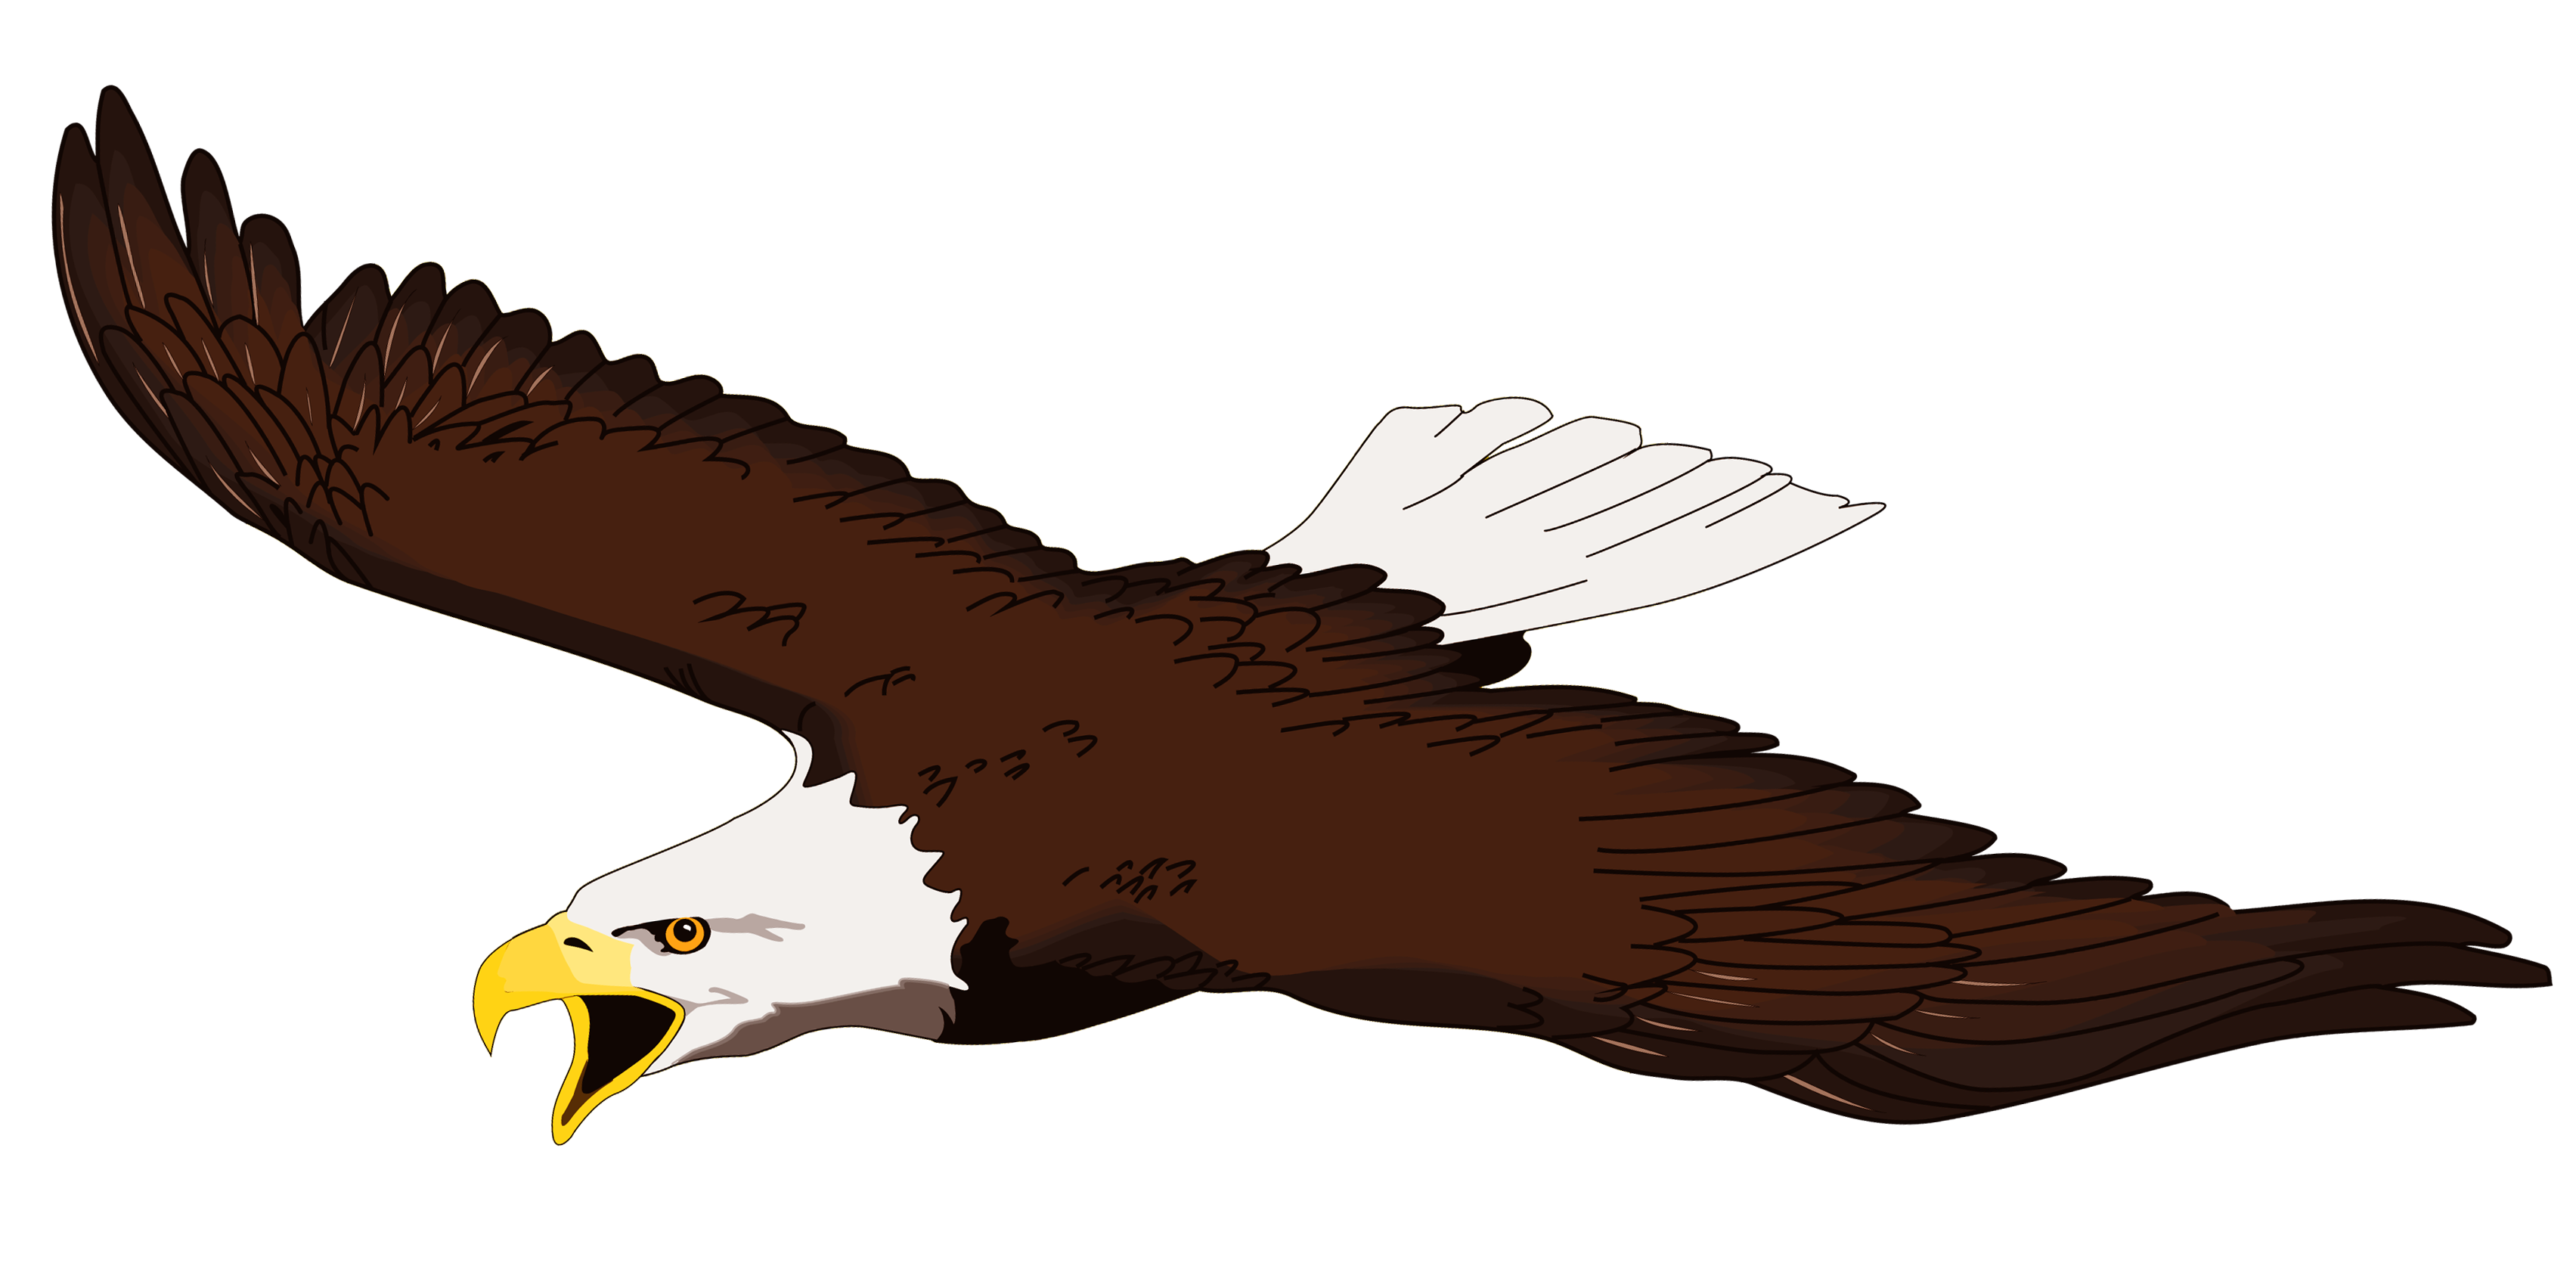 Eagle soaring clipart